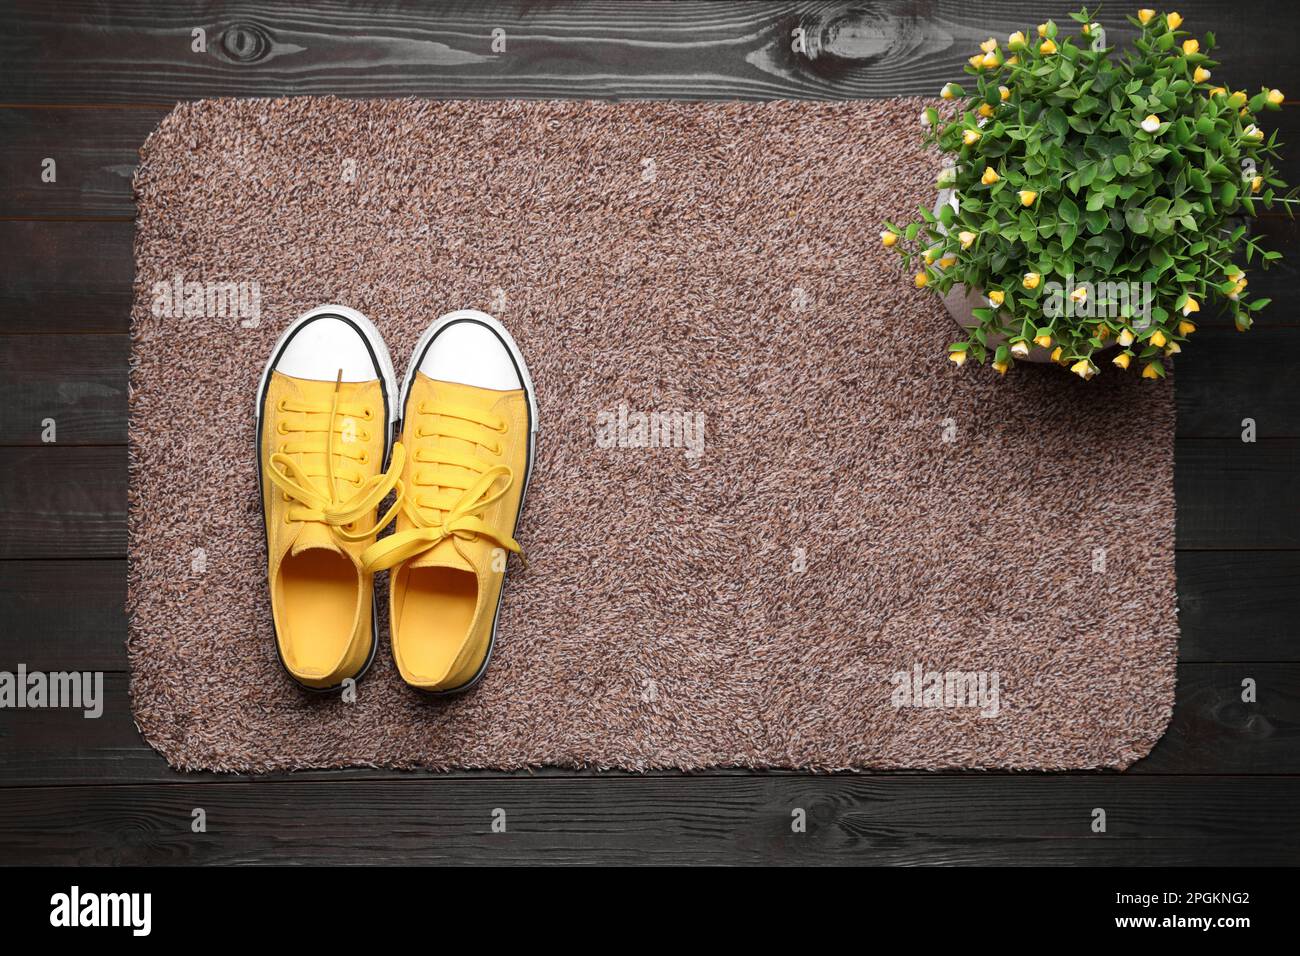 Nouveau tapis de porte propre avec chaussures et plante sur parquet noir, vue de dessus Banque D'Images